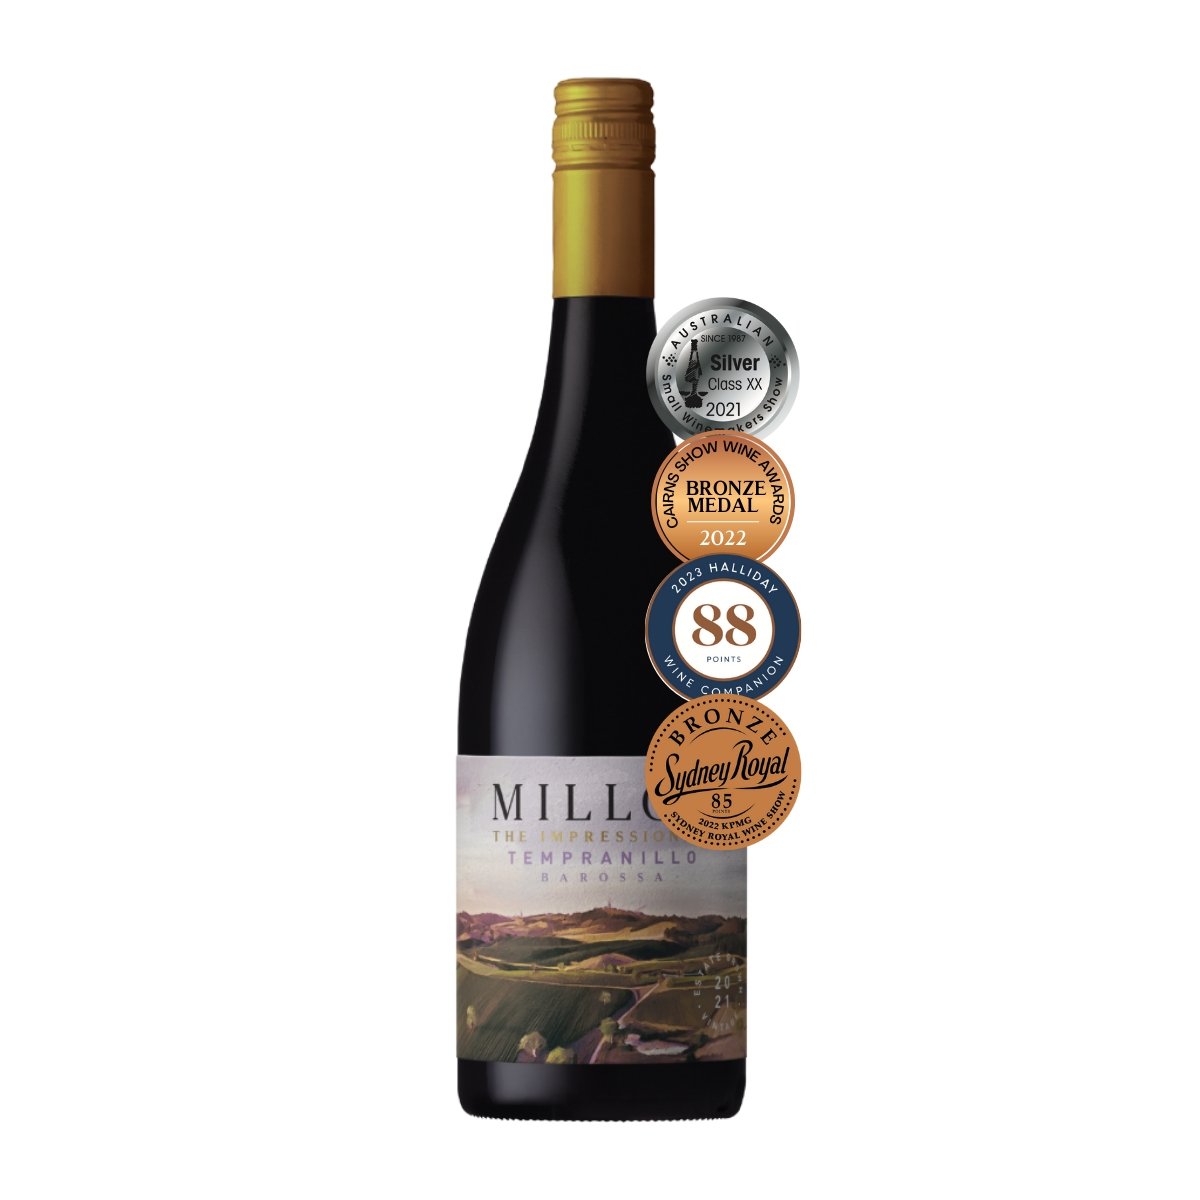 2021 The Impressionist Tempranillo - Millon Wines